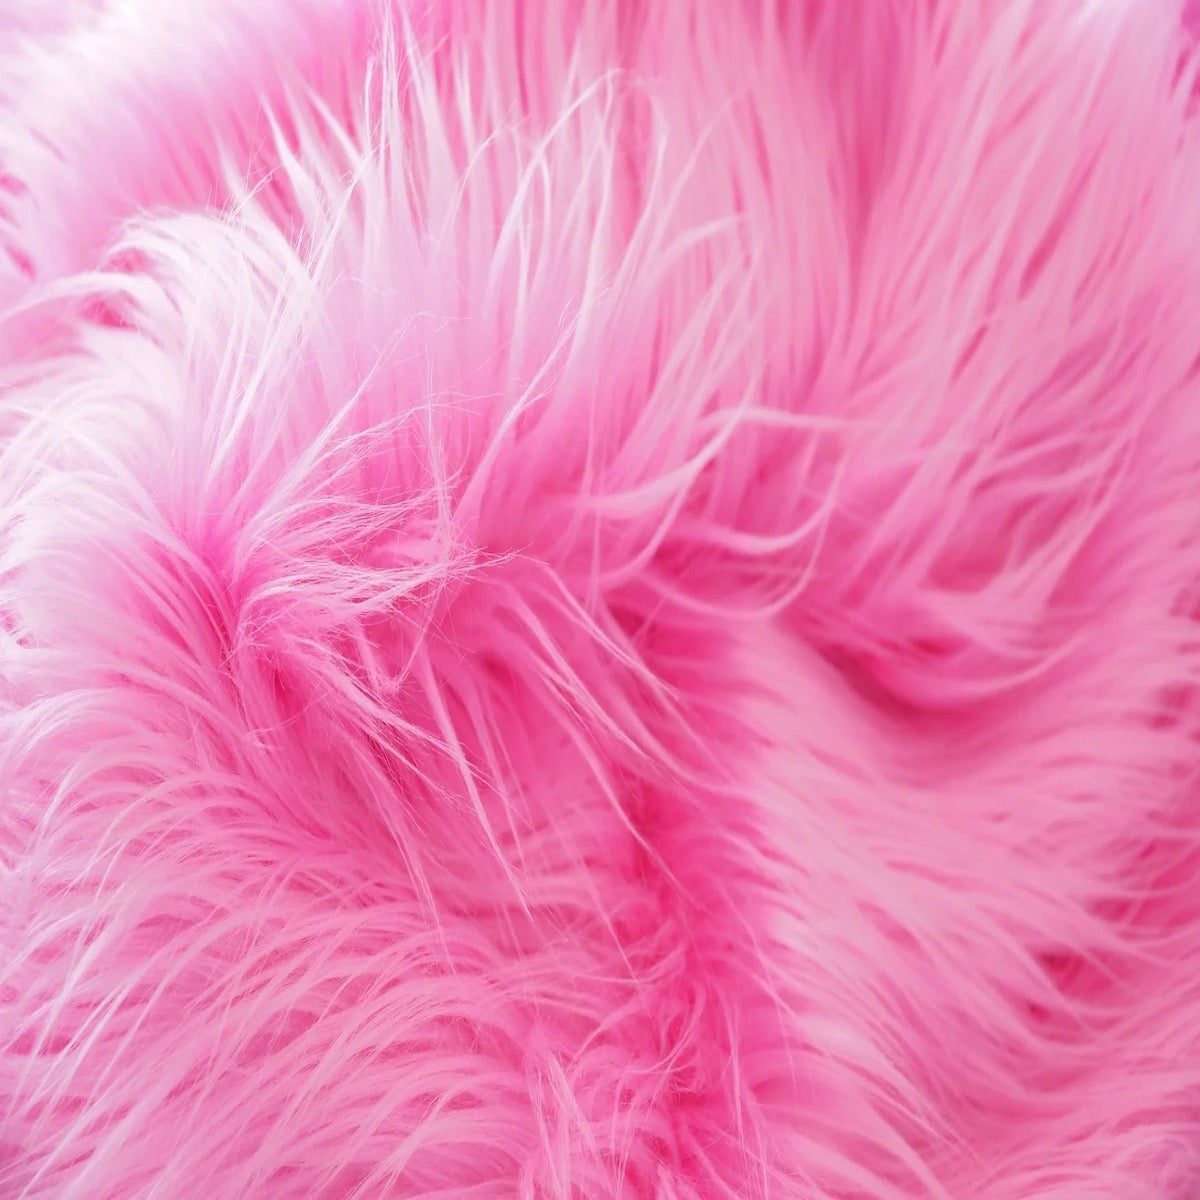 Pink fluff  Pink fur, Everything pink, Pink